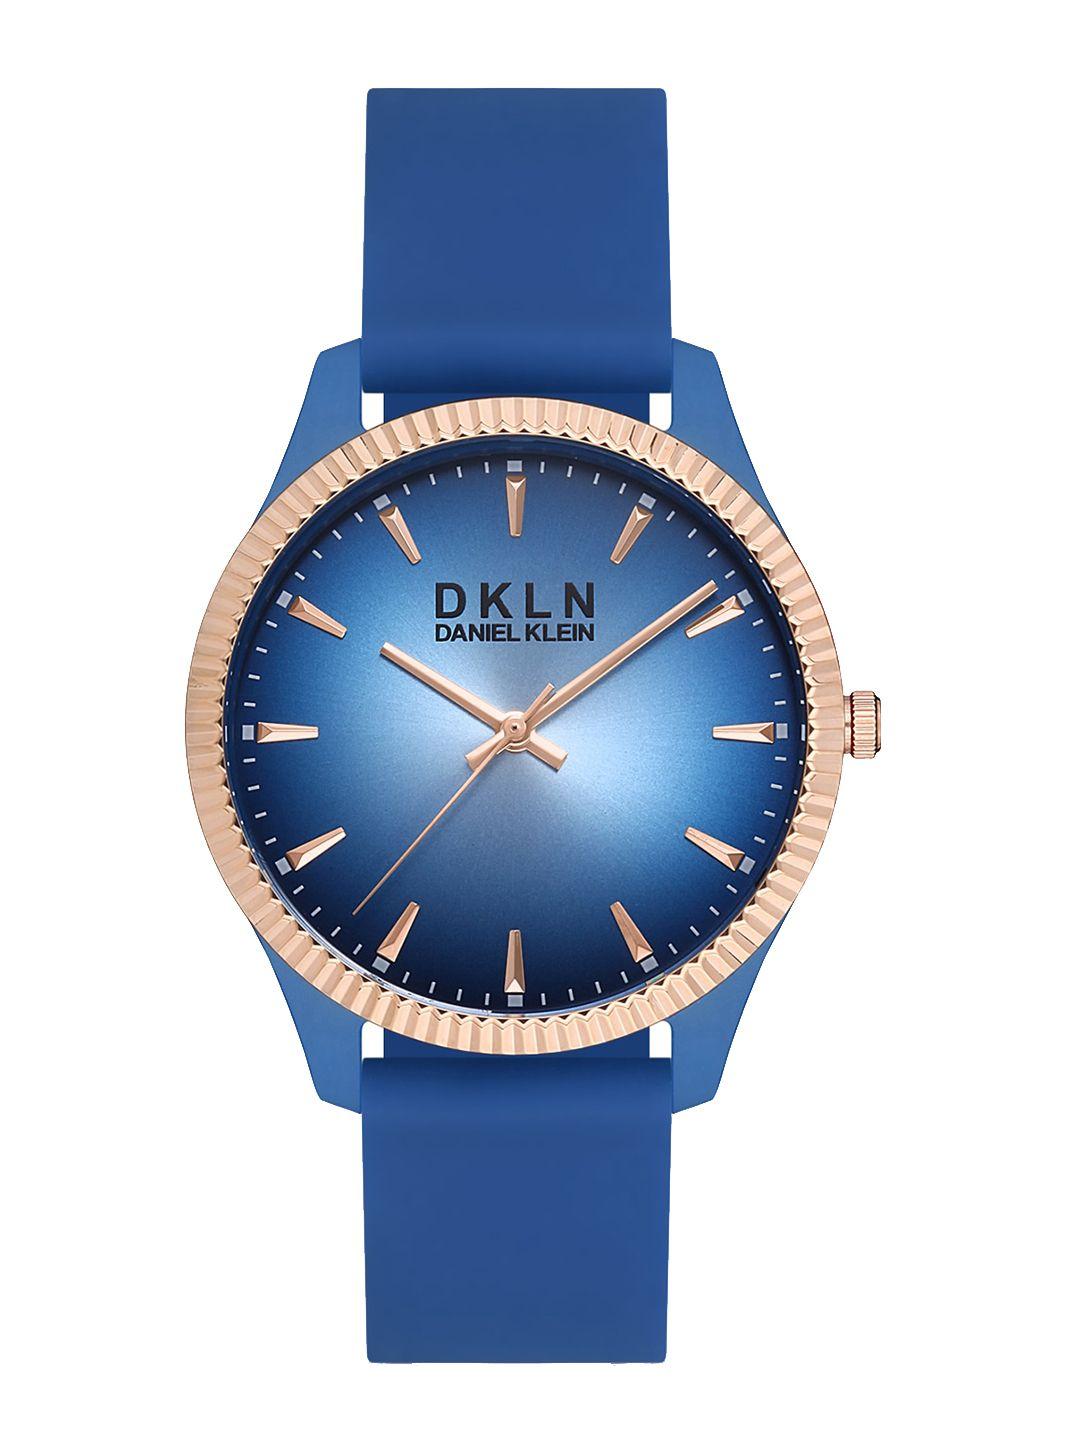 Daniel Klein Men Printed Dial & Blue Straps Analogue Watch DK 1 12767-5